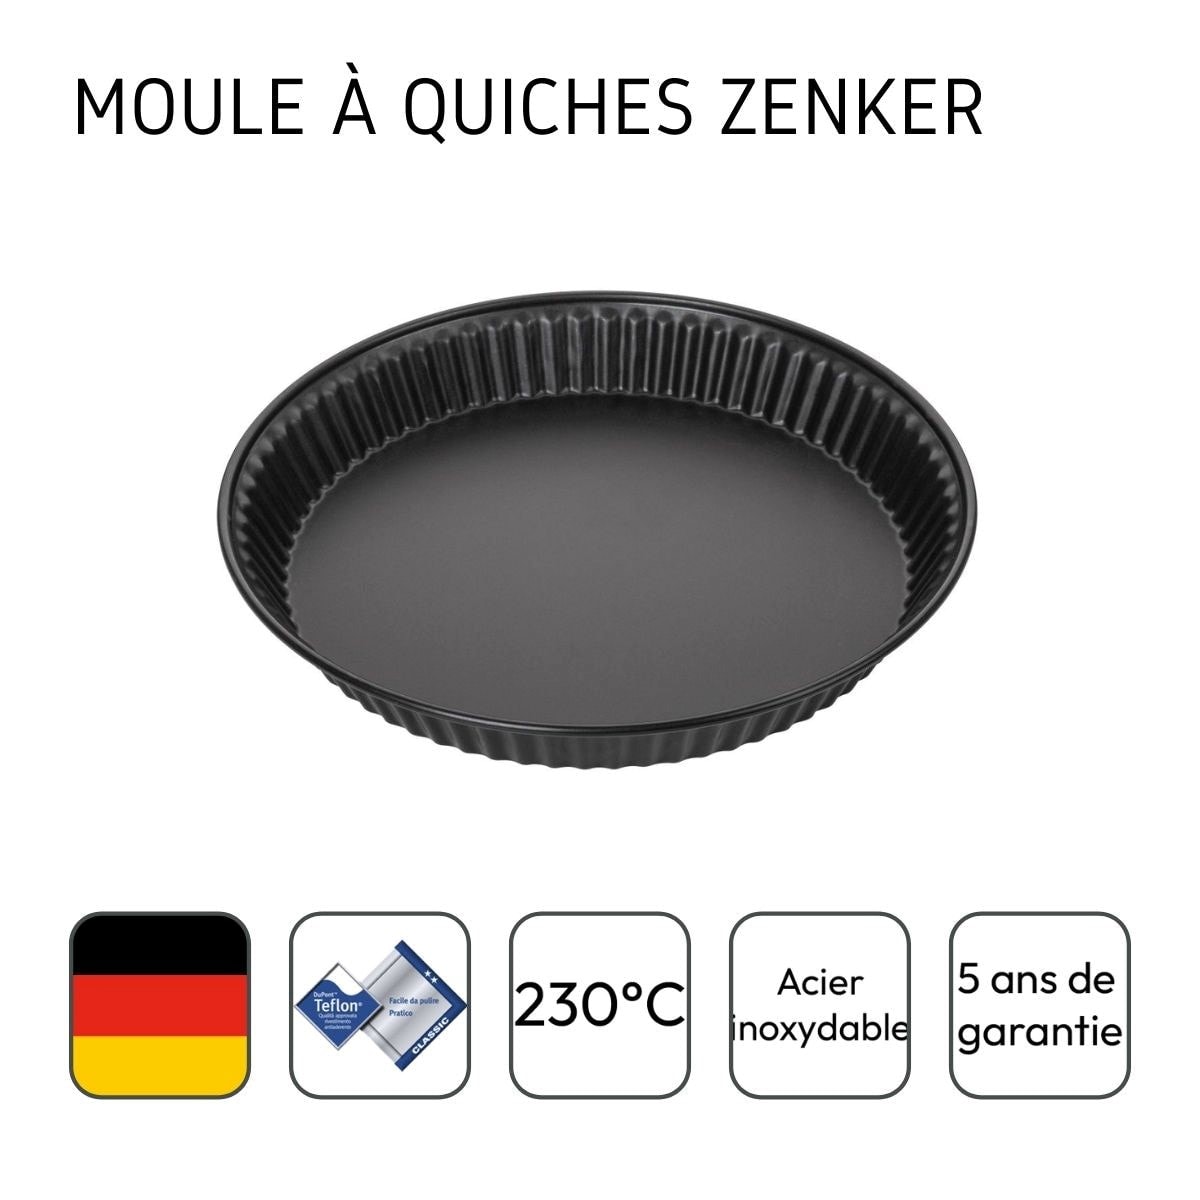 Zenker Moule à quiche Special – Countries Ø 28 cm